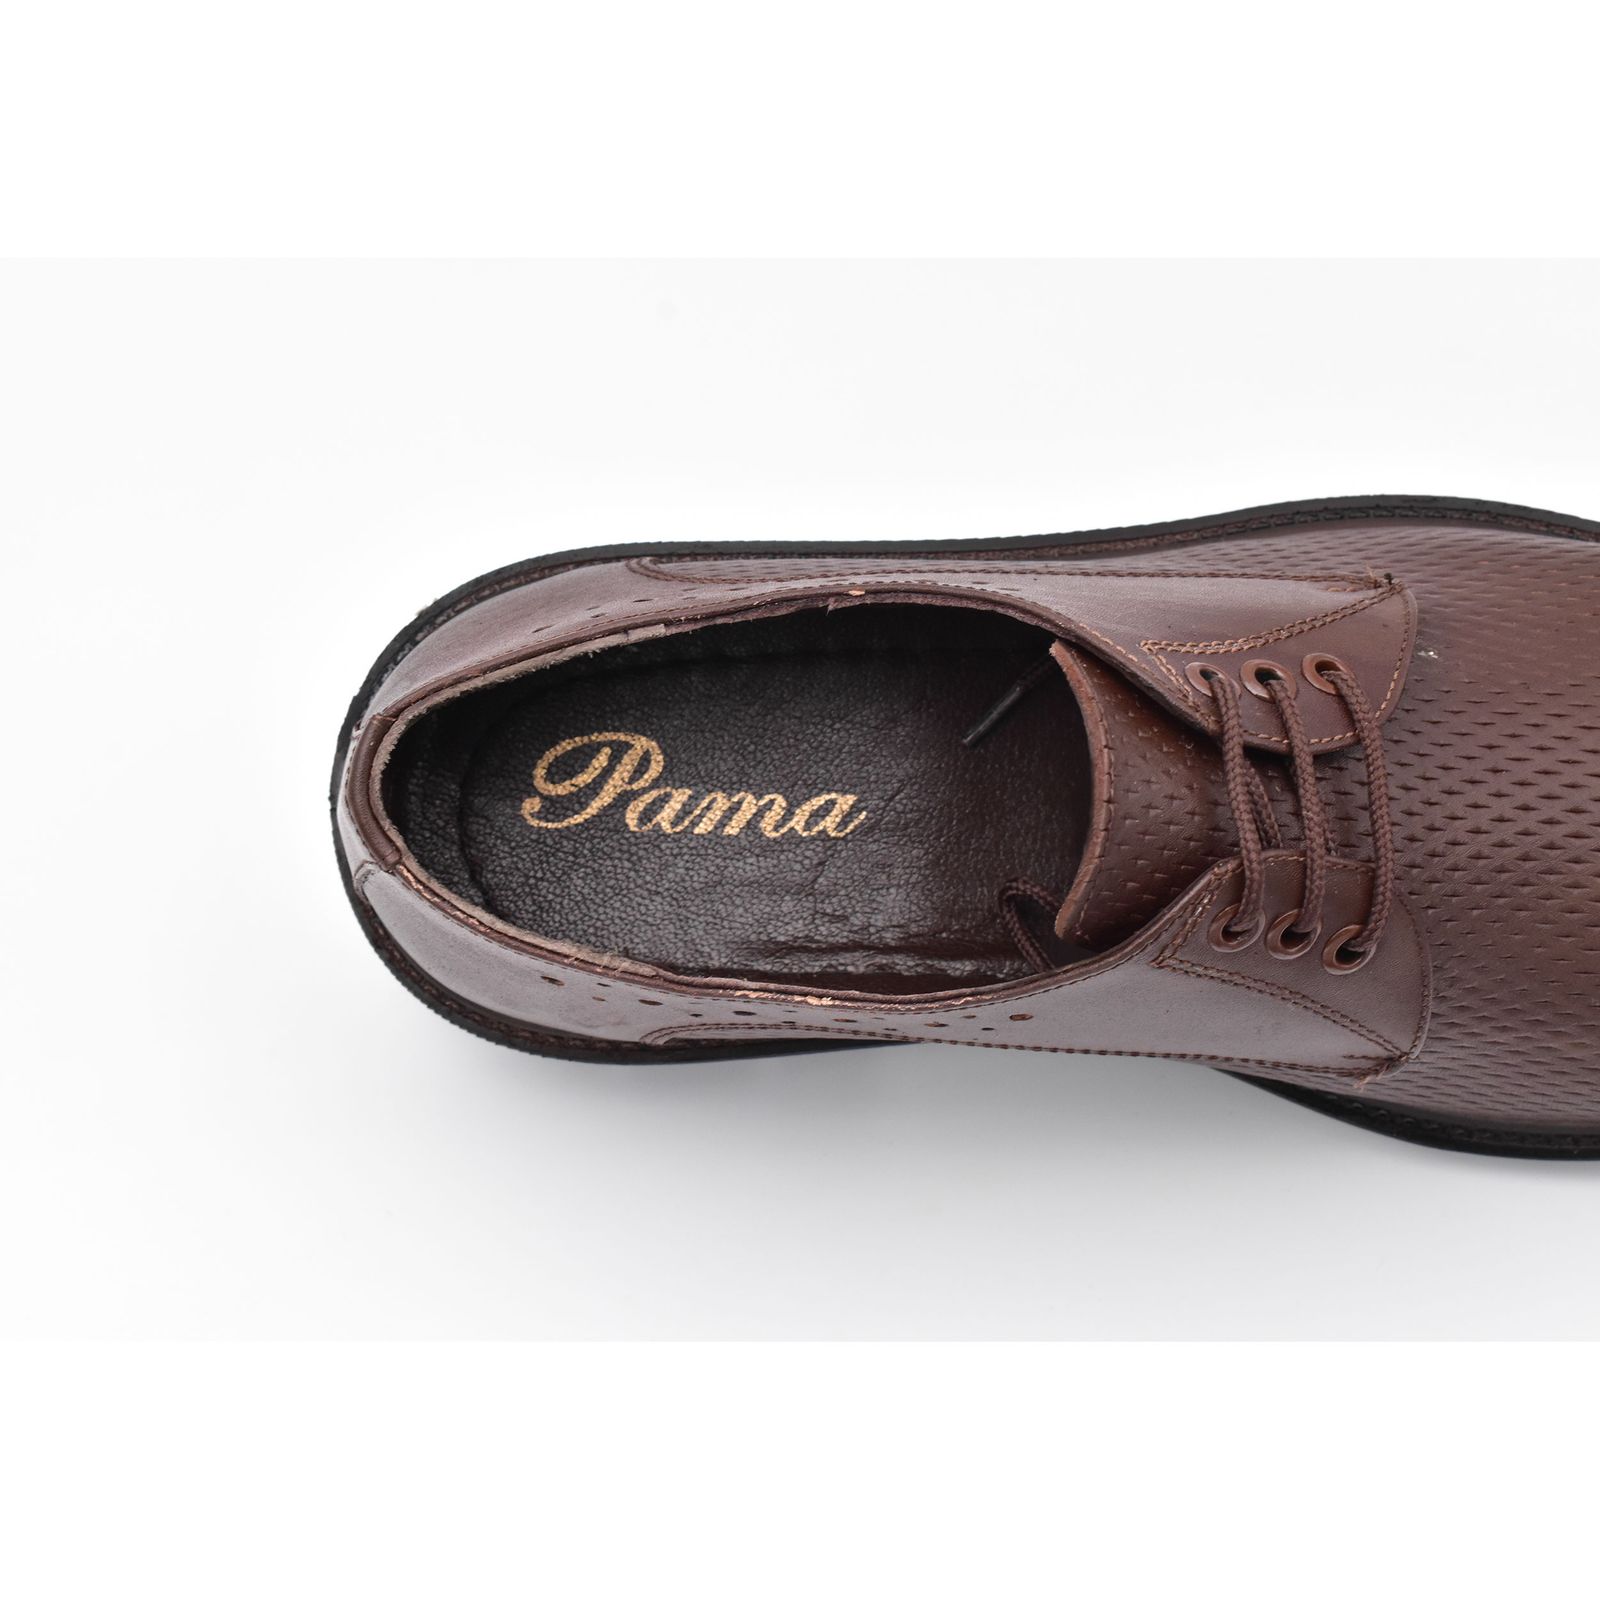 کفش مردانه پاما مدل Morano کد G1183 -  - 9